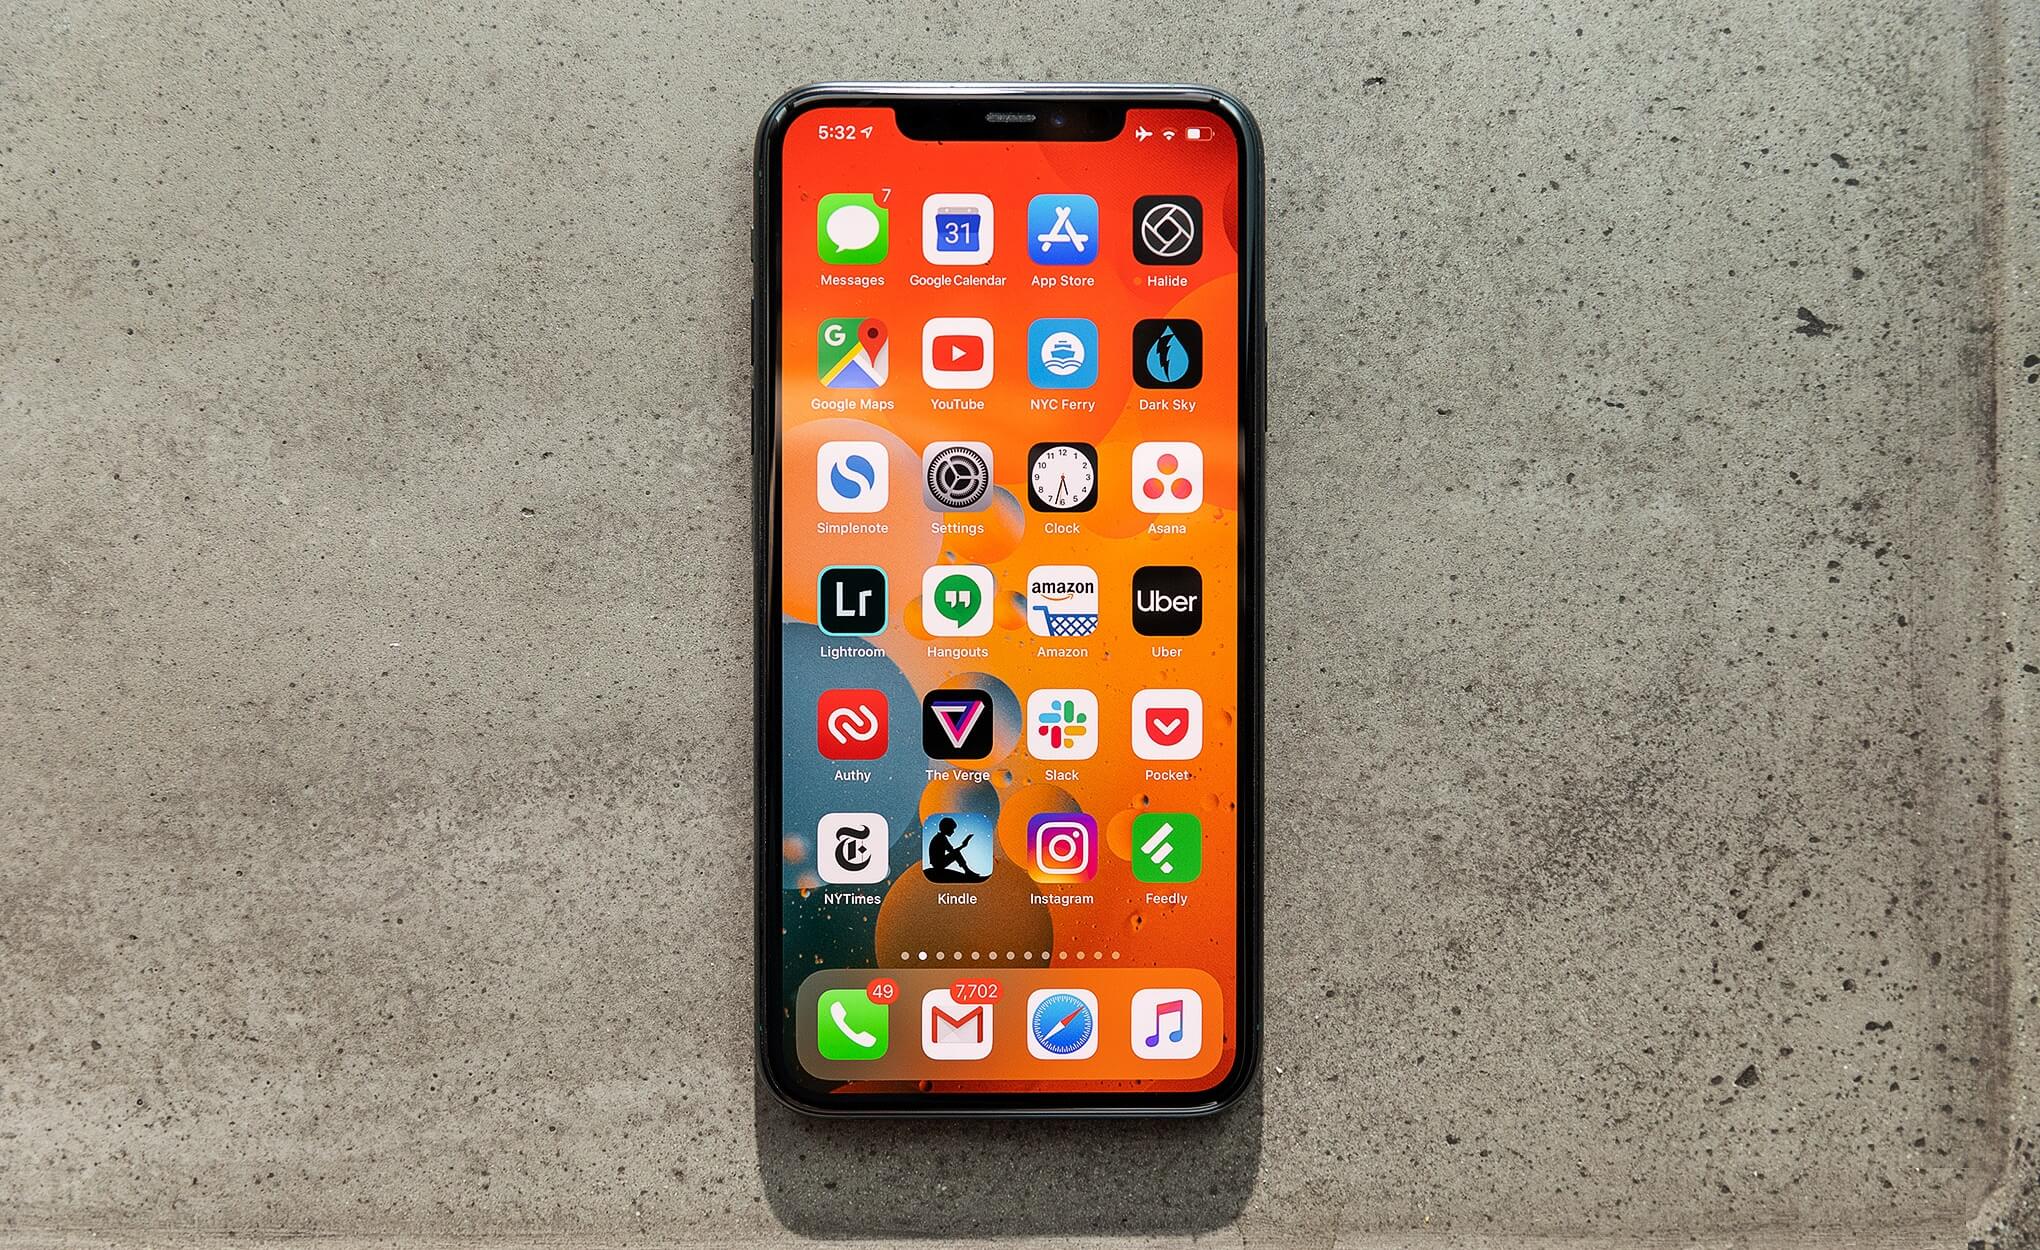 Стоимость iPhone 11 Pro Max снизилась на 30 000 рублей